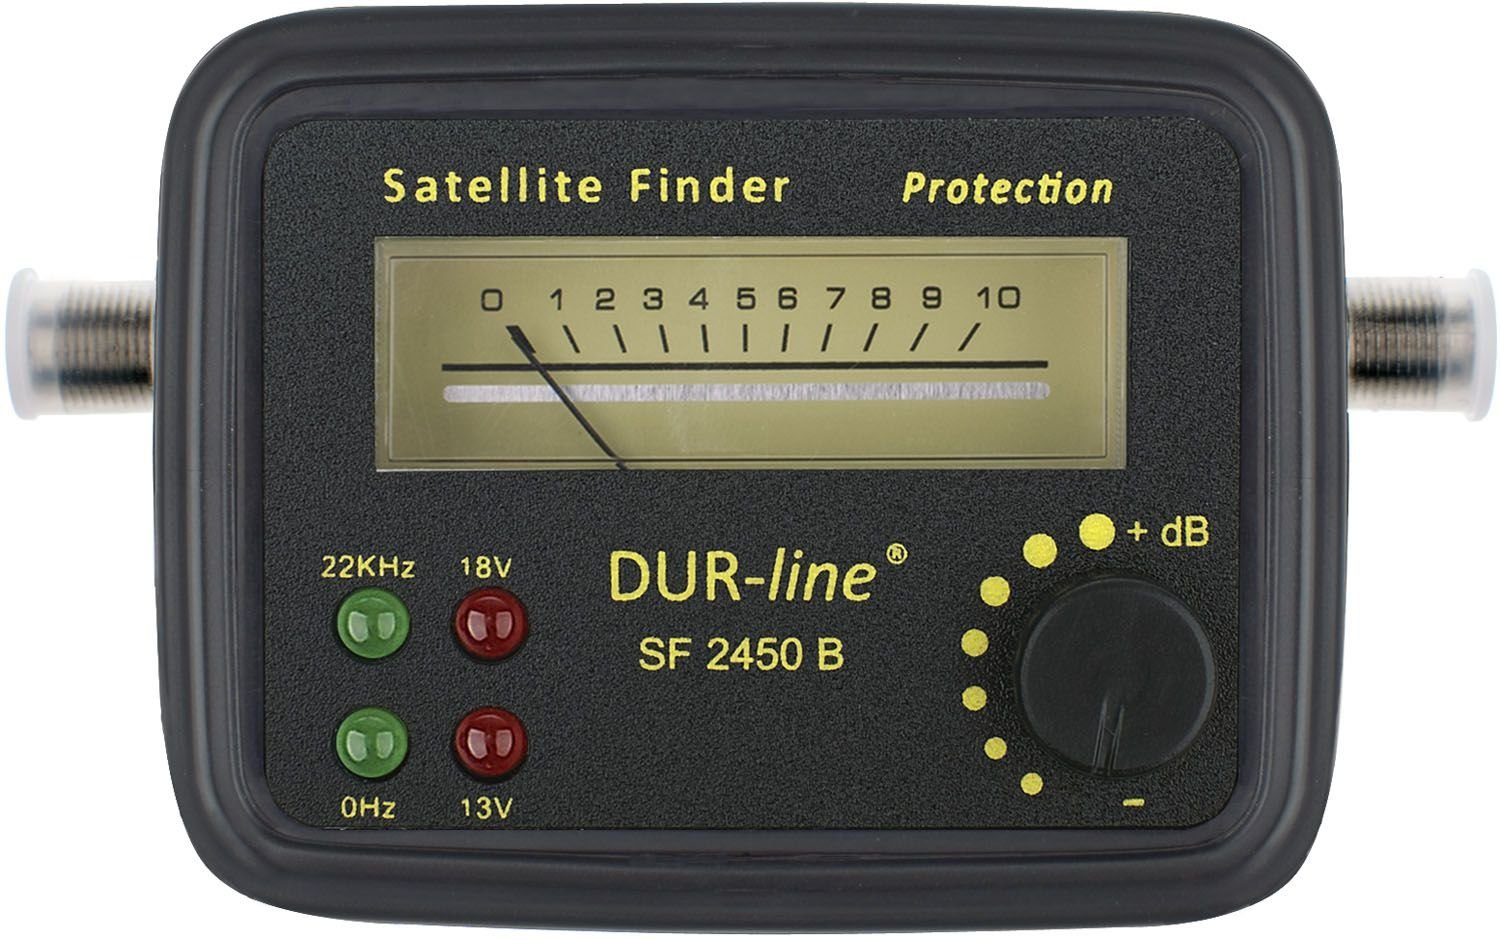 - SF 2450 B DUR-line DUR-line Satfinder SAT-Kabel